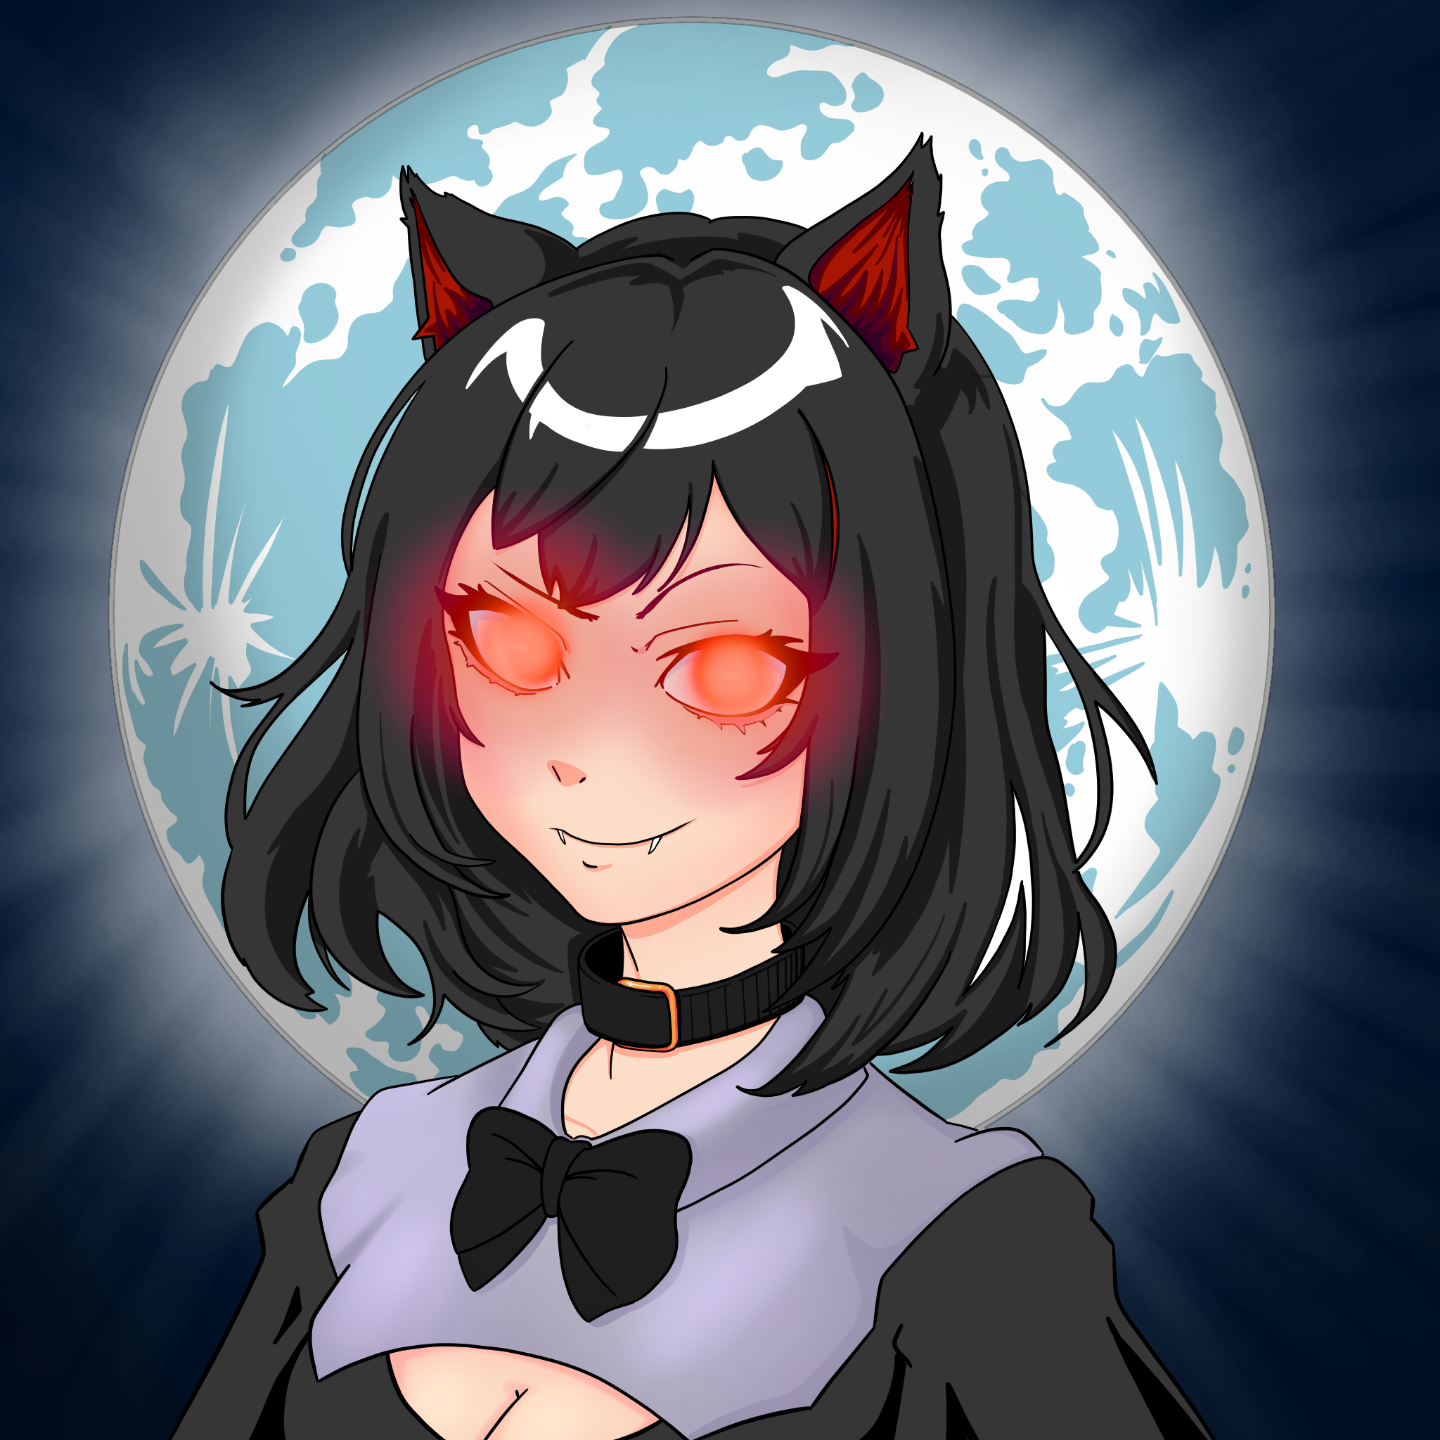 [evil] lvl. 99 autistic lesbian vampire catgirl